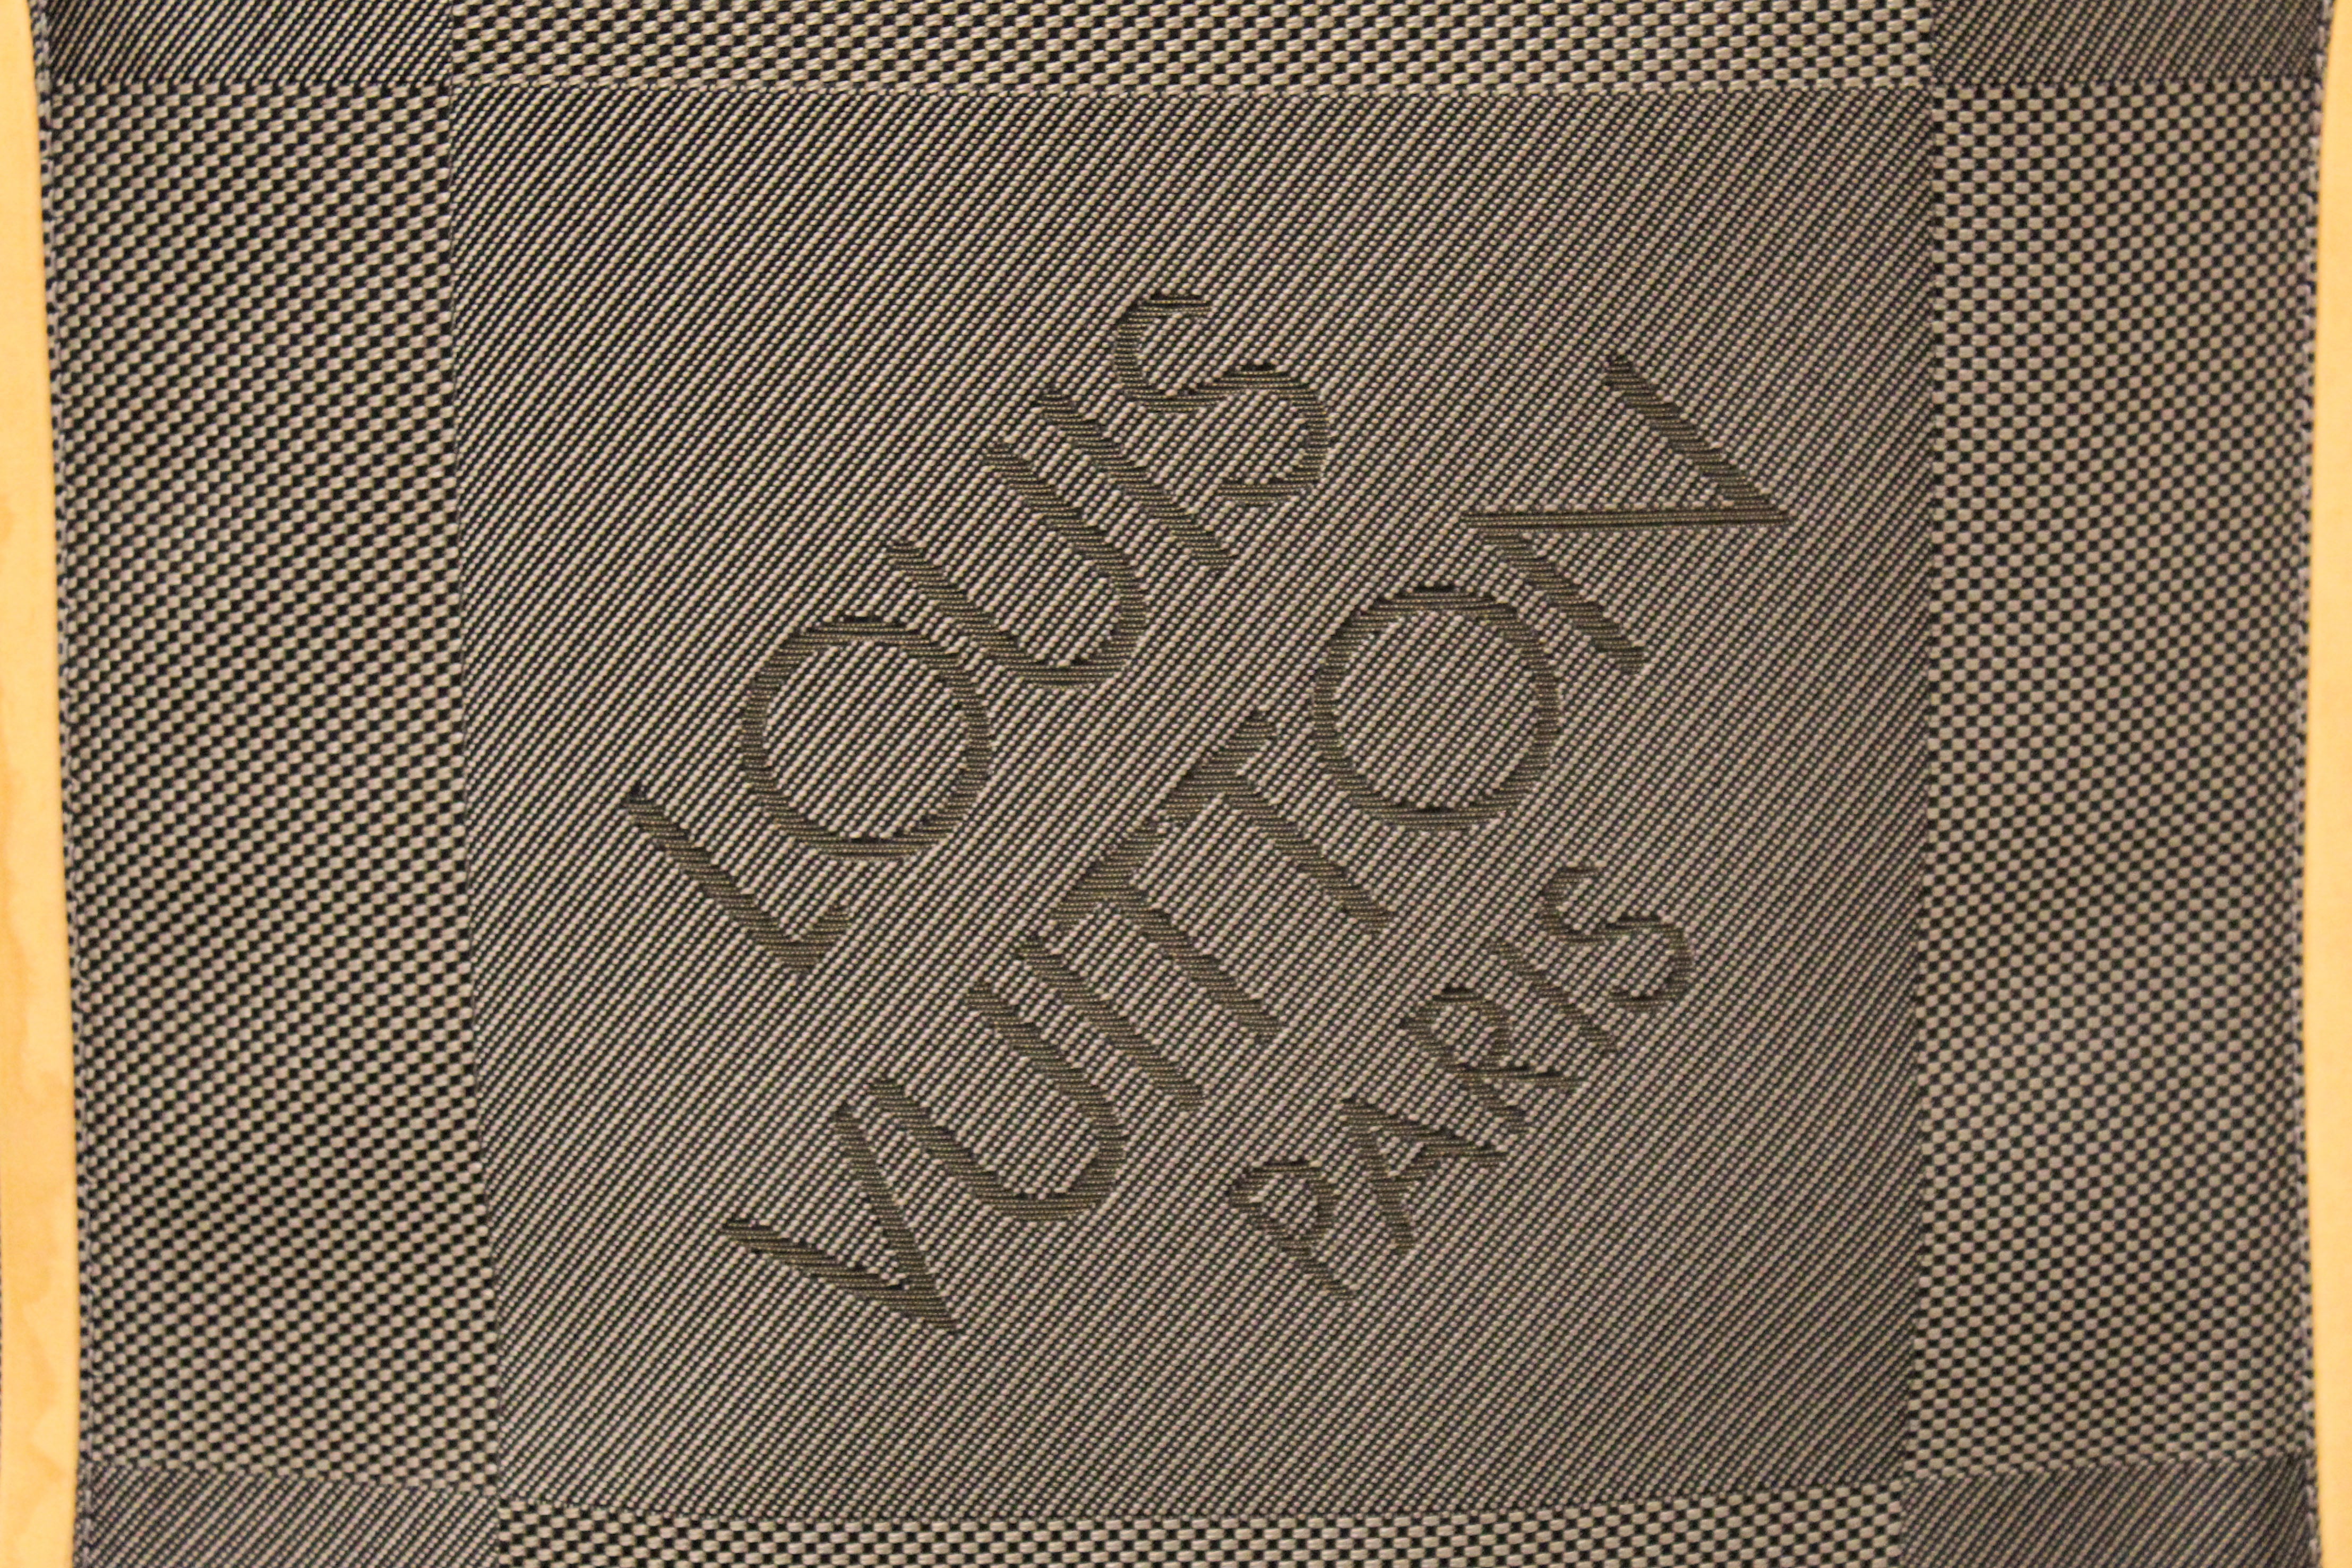 Louis Vuitton - Messenger NM Damier Géant Canvas Noir